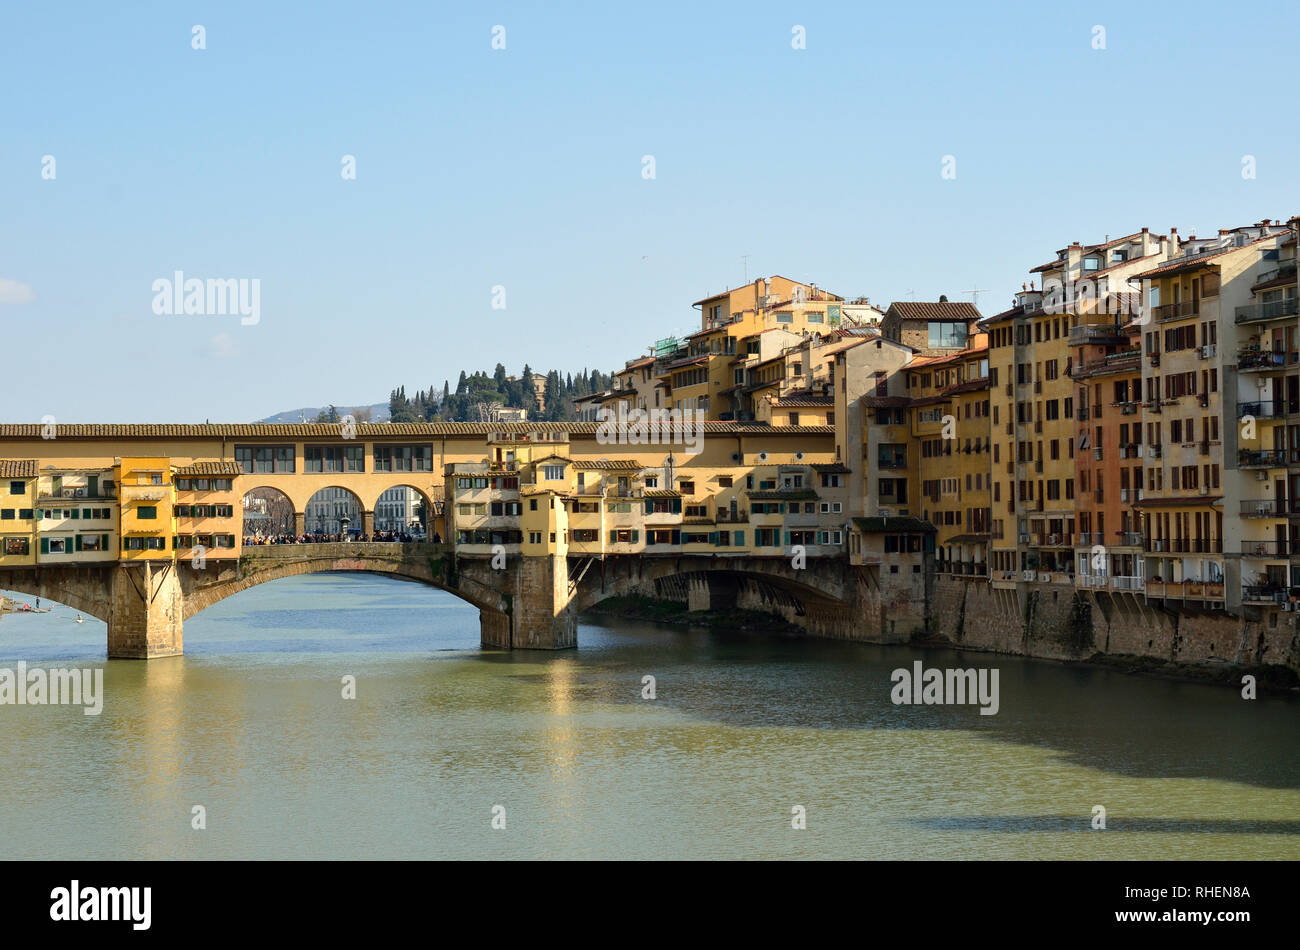 Ponte Vecchio, Florence, Italy Stock Photo